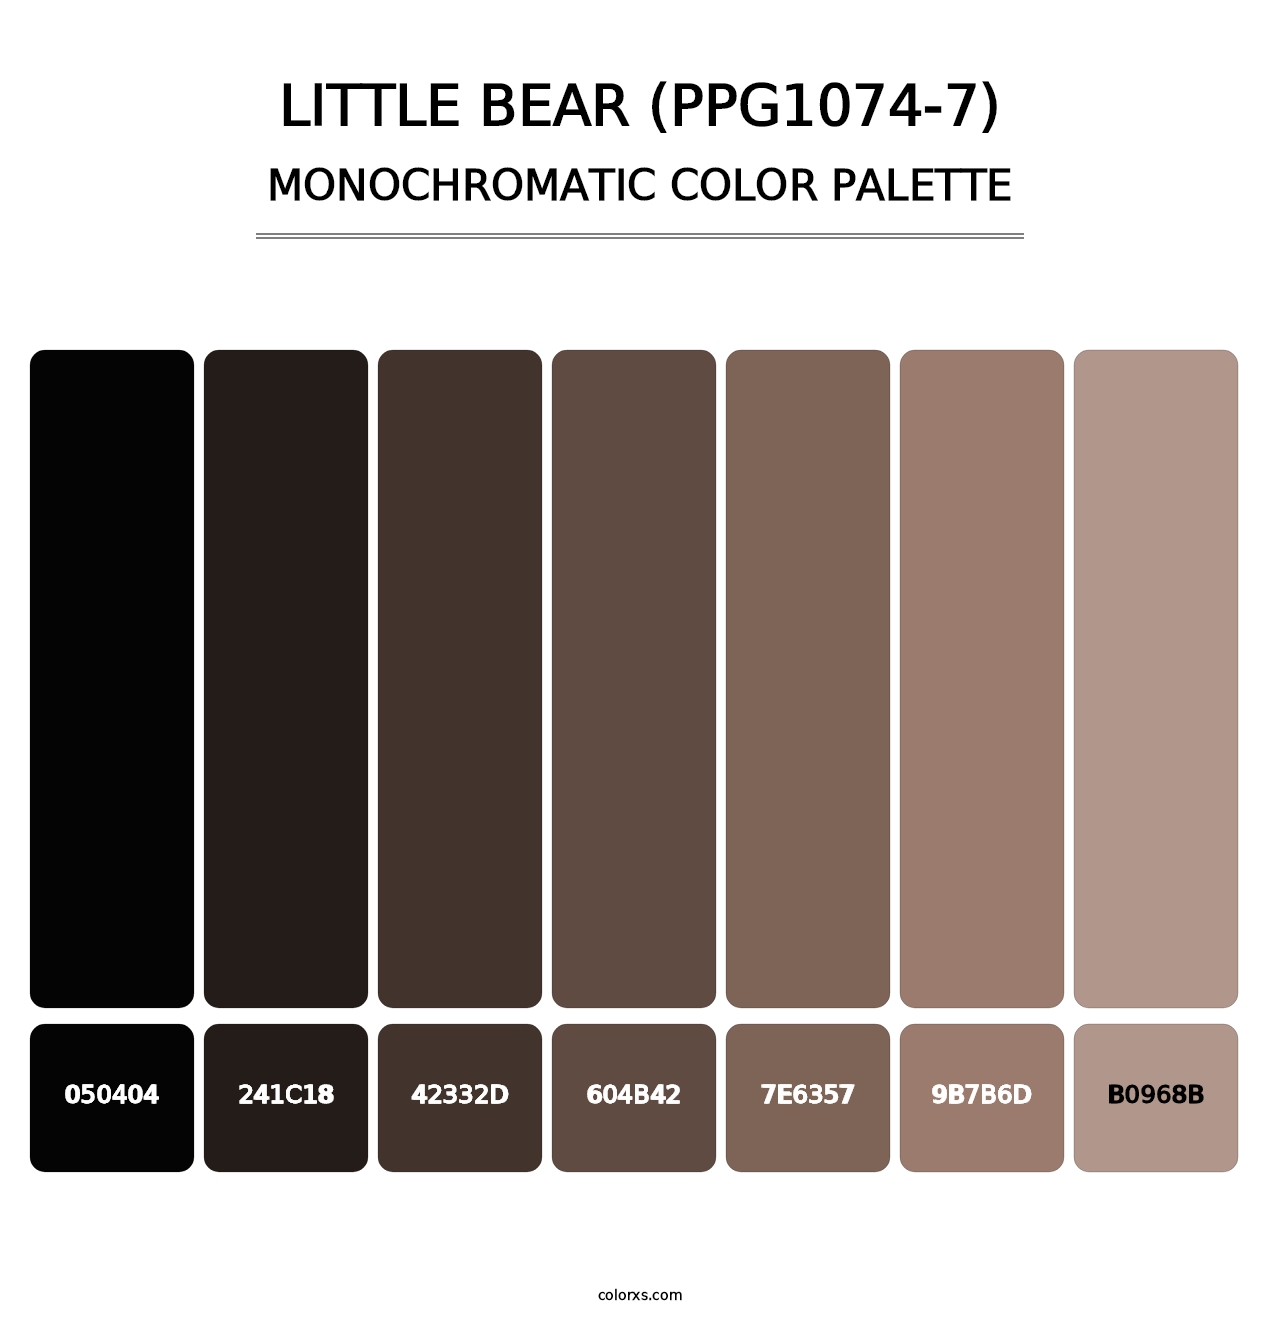 Little Bear (PPG1074-7) - Monochromatic Color Palette